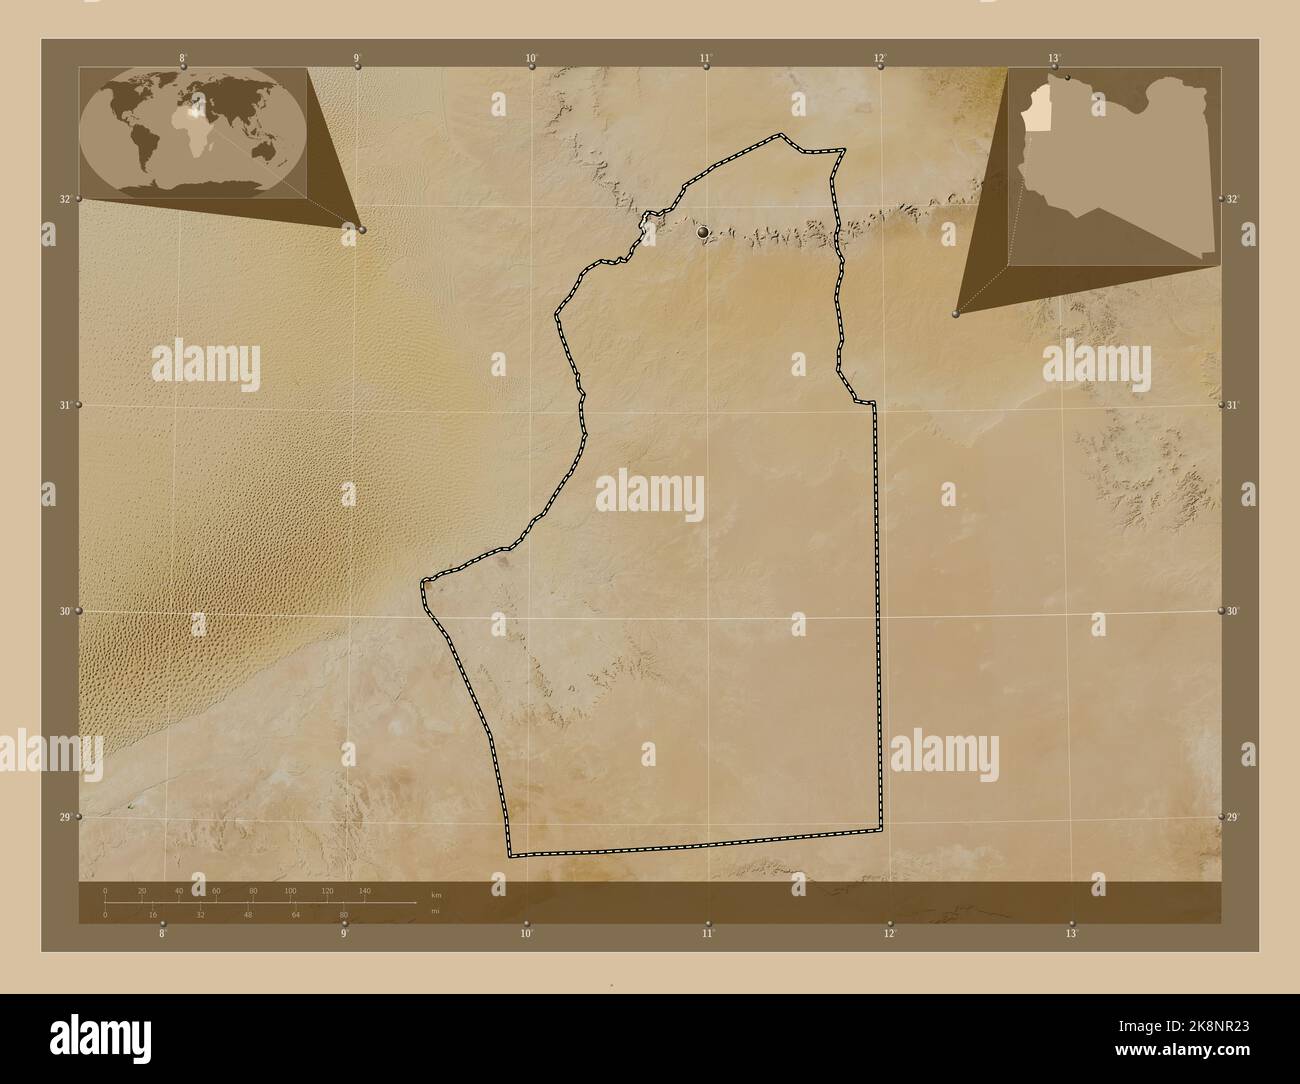 Nalut, Bezirk von Libyen. Satellitenkarte mit niedriger Auflösung. Karten für zusätzliche Eckposition Stockfoto